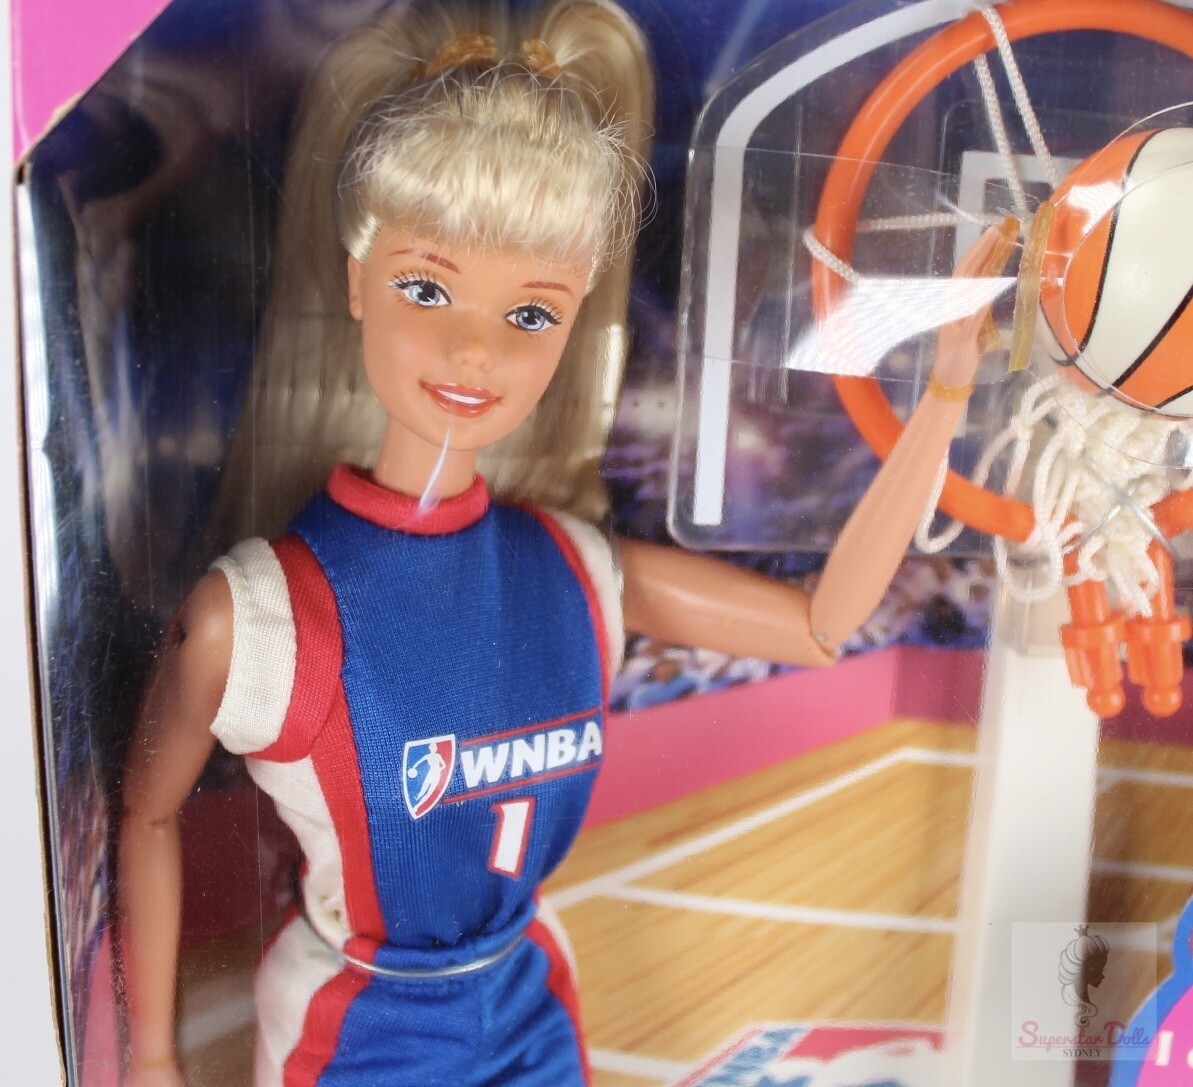 1998 WNBA Barbie Doll